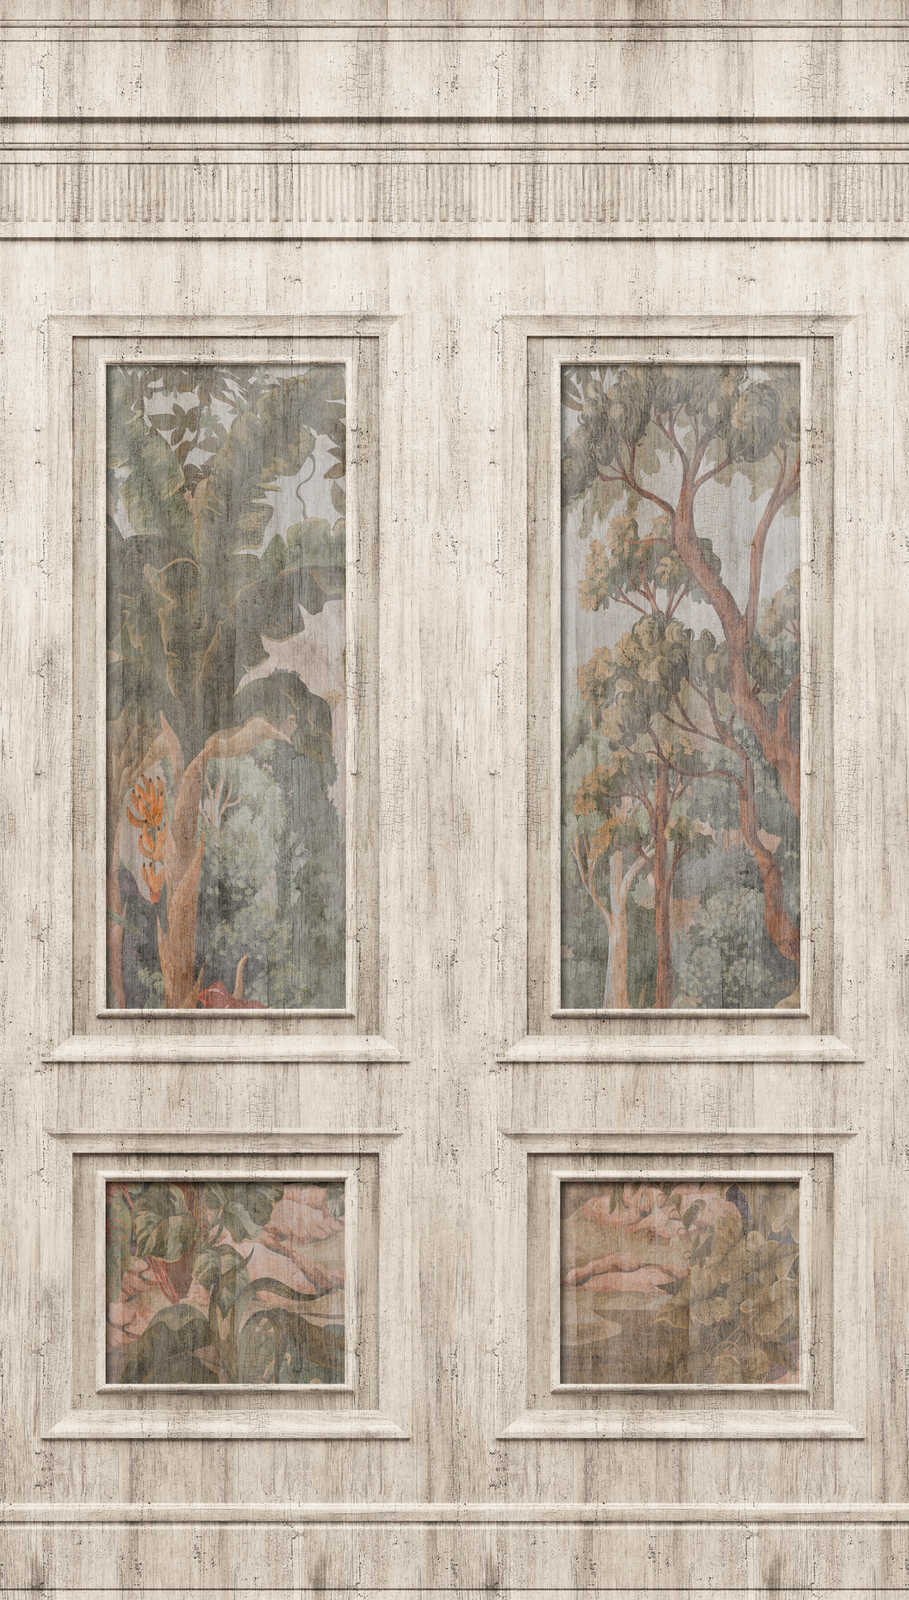             Papel pintado no tejido con motivo de damero y bosque de aspecto vintage - gris, beige
        